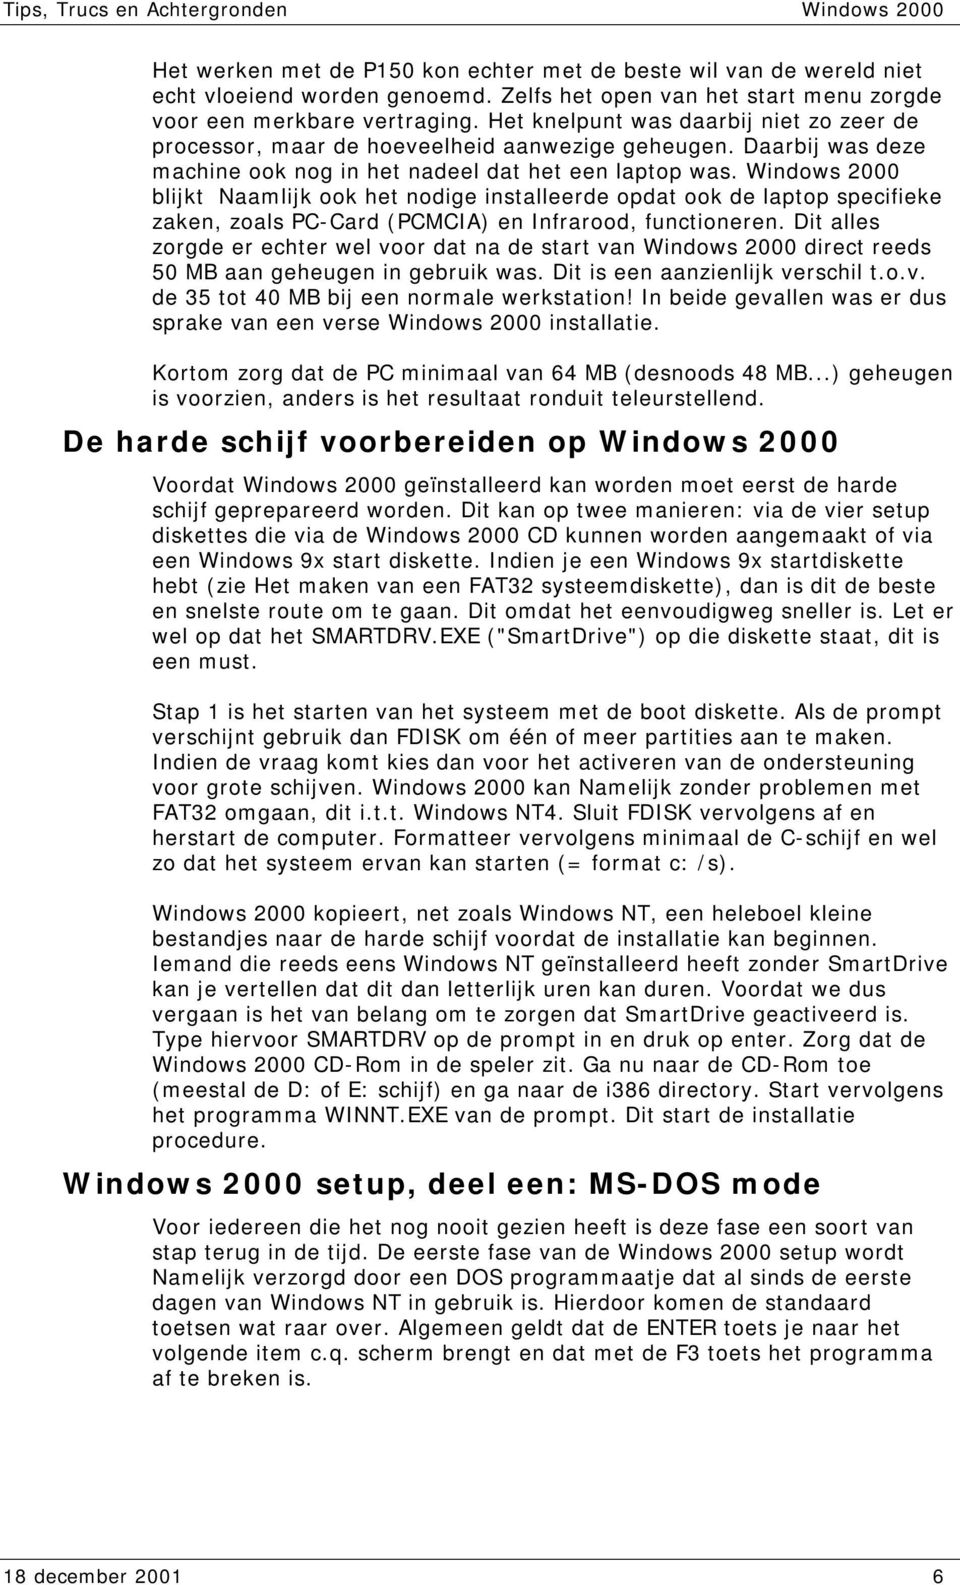 Windows 2000 blijkt Naamlijk ook het nodige installeerde opdat ook de laptop specifieke zaken, zoals PC-Card (PCMCIA) en Infrarood, functioneren.